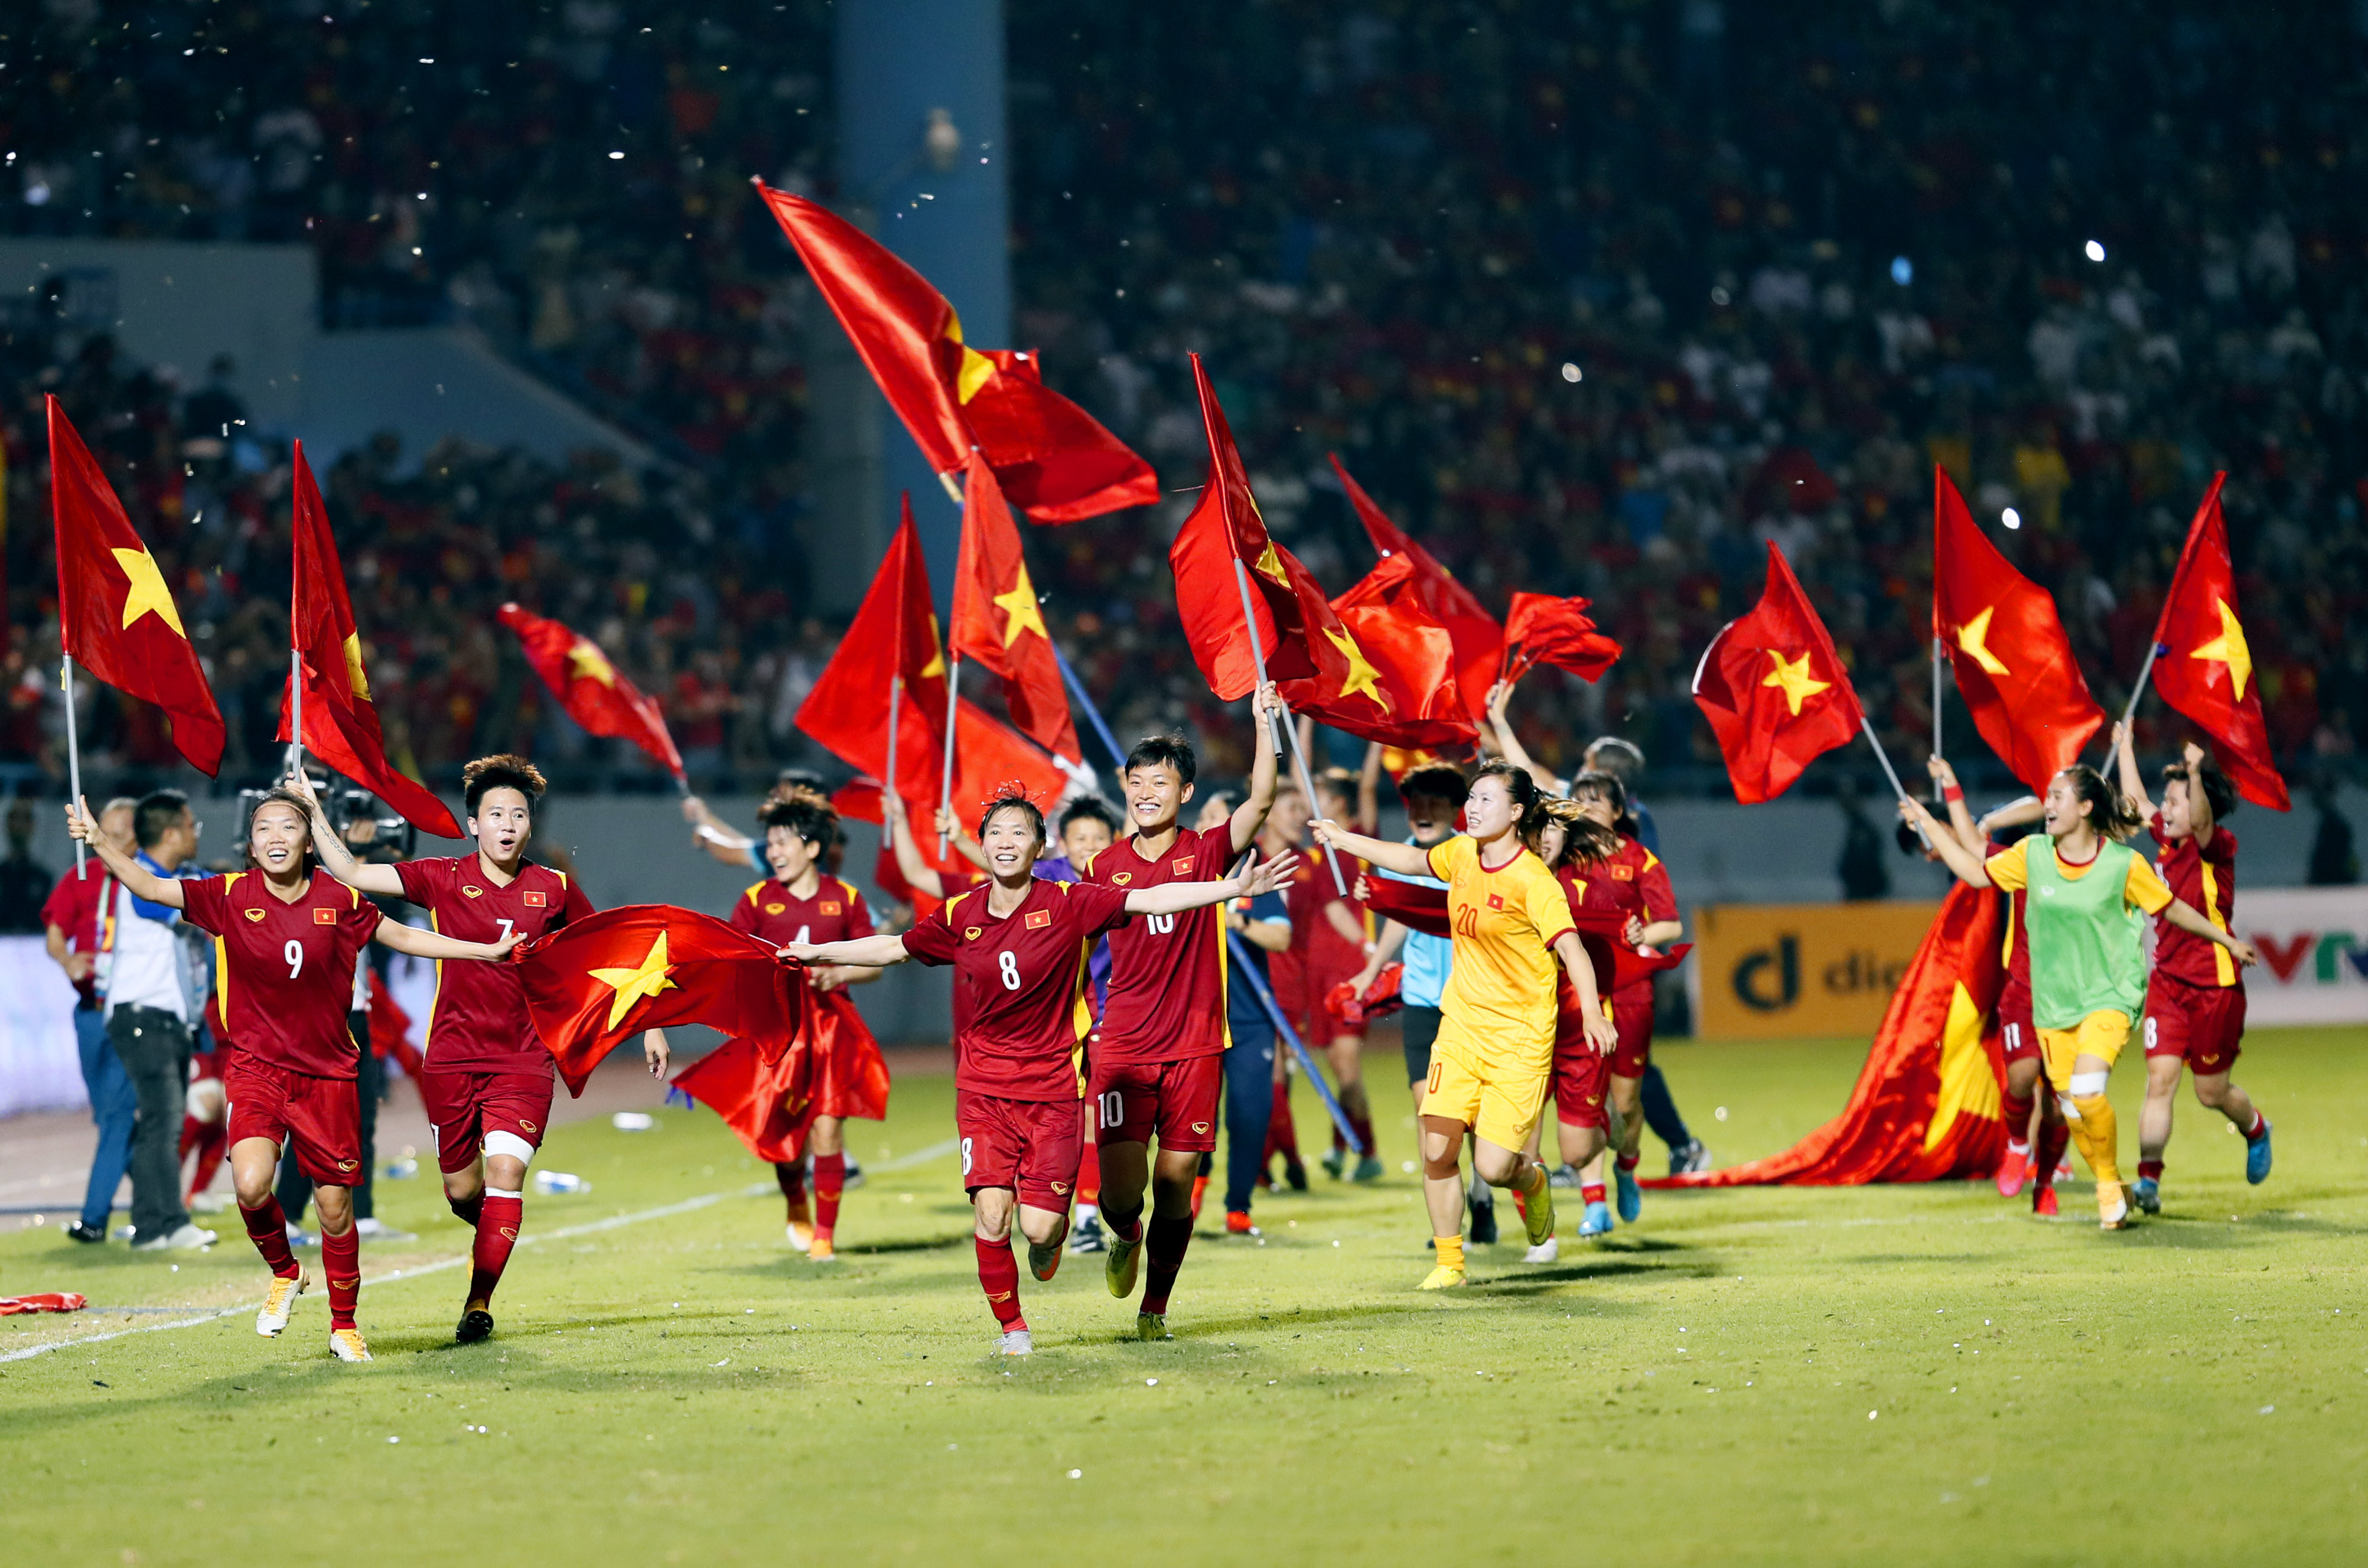 Tuyển nữ Việt Nam đã tạo nên kỳ tích trong làng bóng đá châu Á. Chính những chiến thắng đầy cảm xúc này của đội tuyển đã làm rung động các fan hâm mộ. Hãy xem những hình ảnh đầy kích thích này để cùng chúc mừng và chia sẻ niềm cảm xúc khó quên.